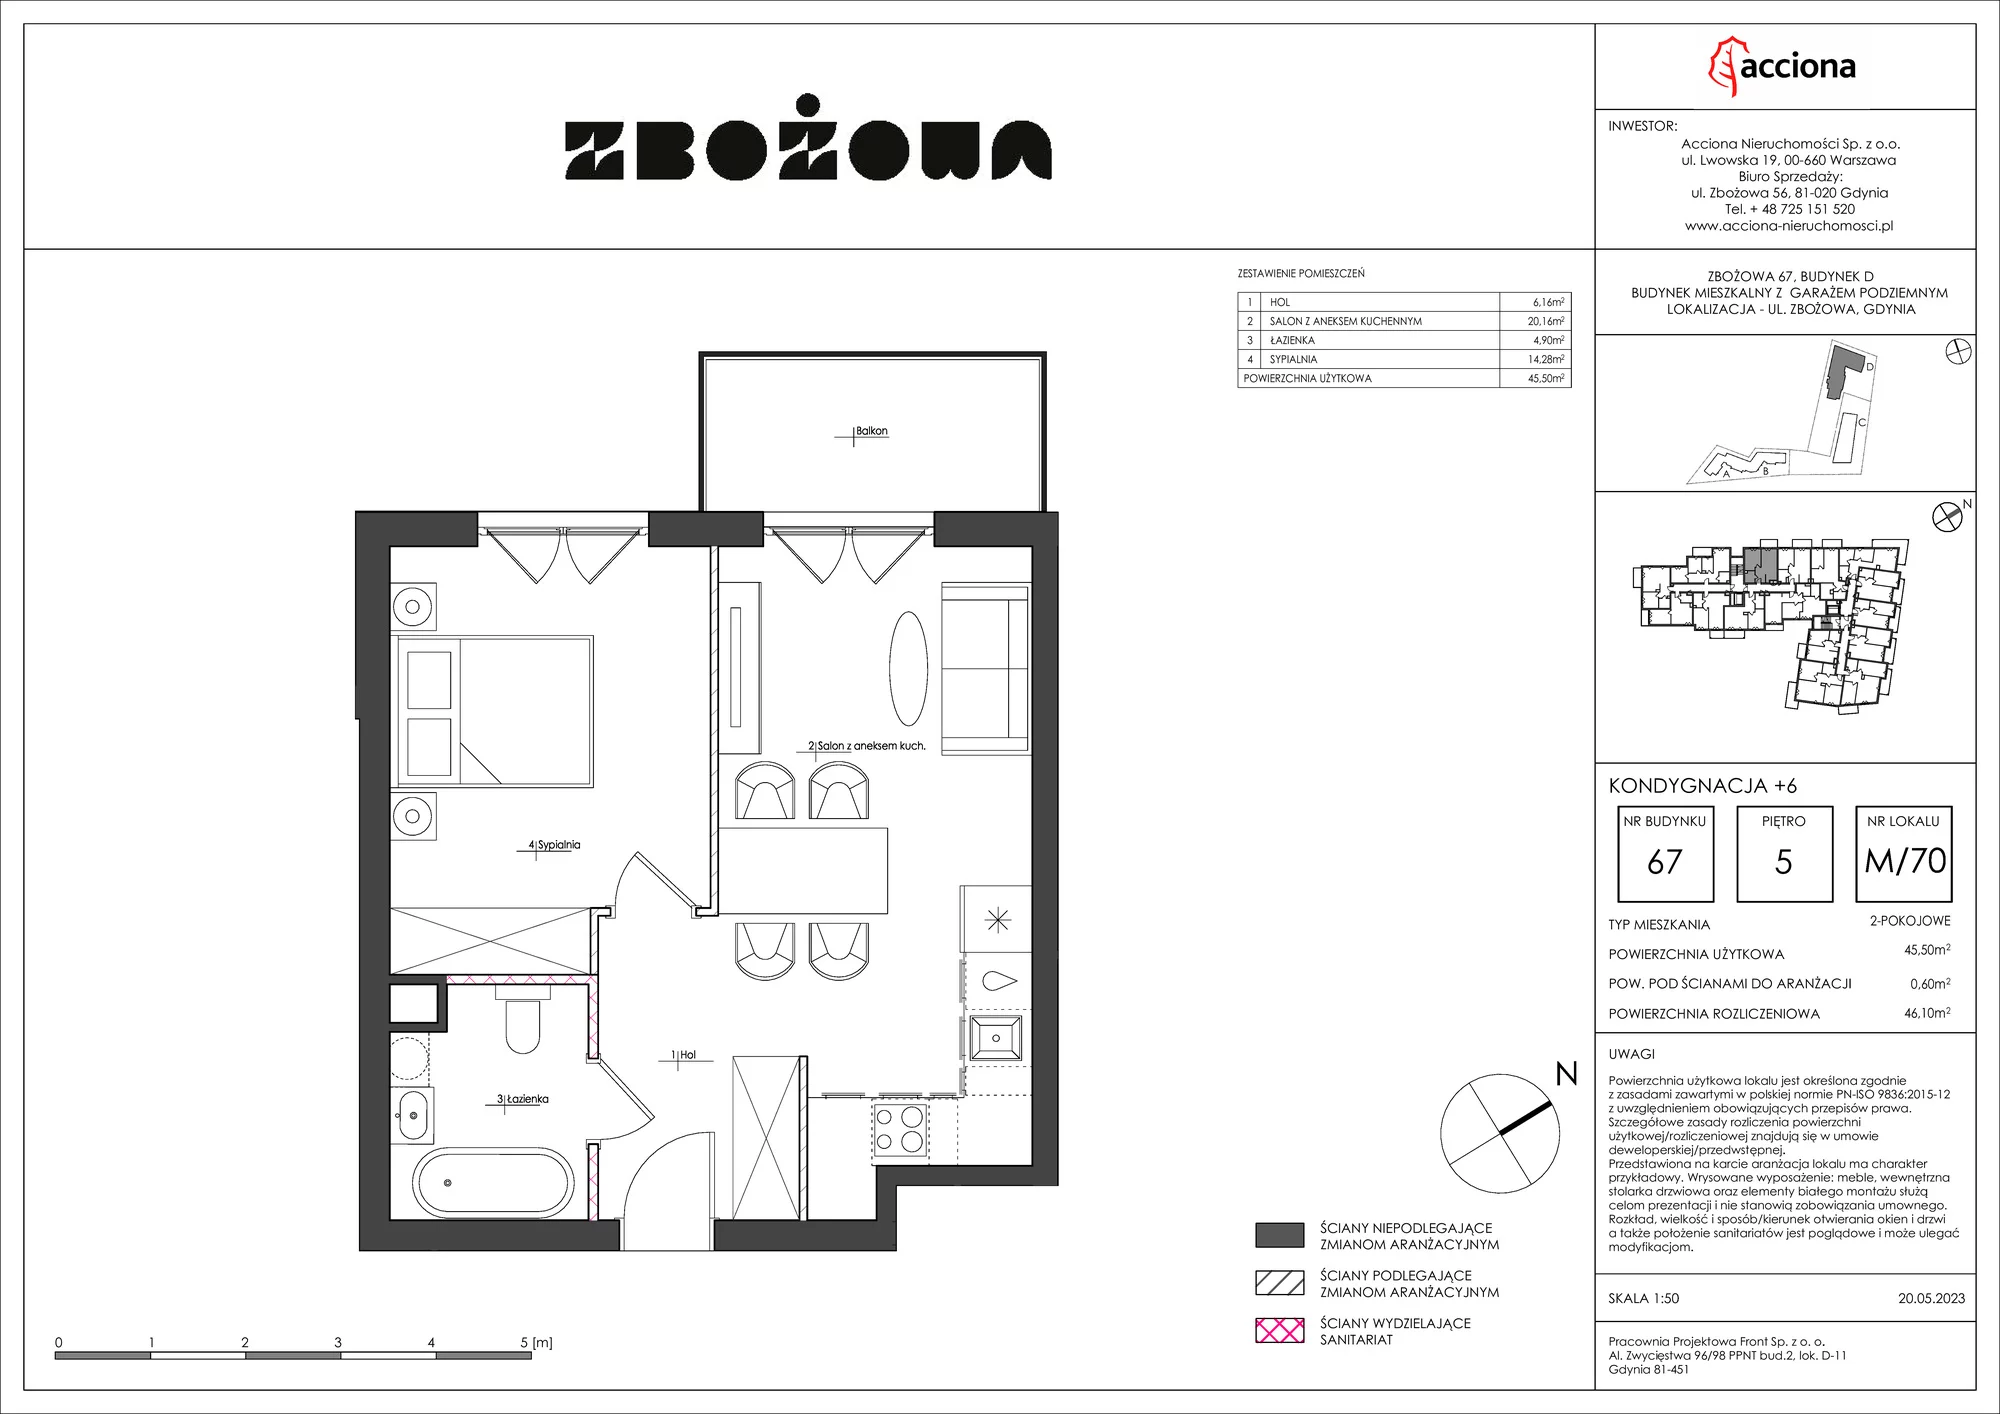 Mieszkanie 46,10 m², piętro 5, oferta nr 67.70, Zbożowa, Gdynia, Cisowa, ul. Zbożowa